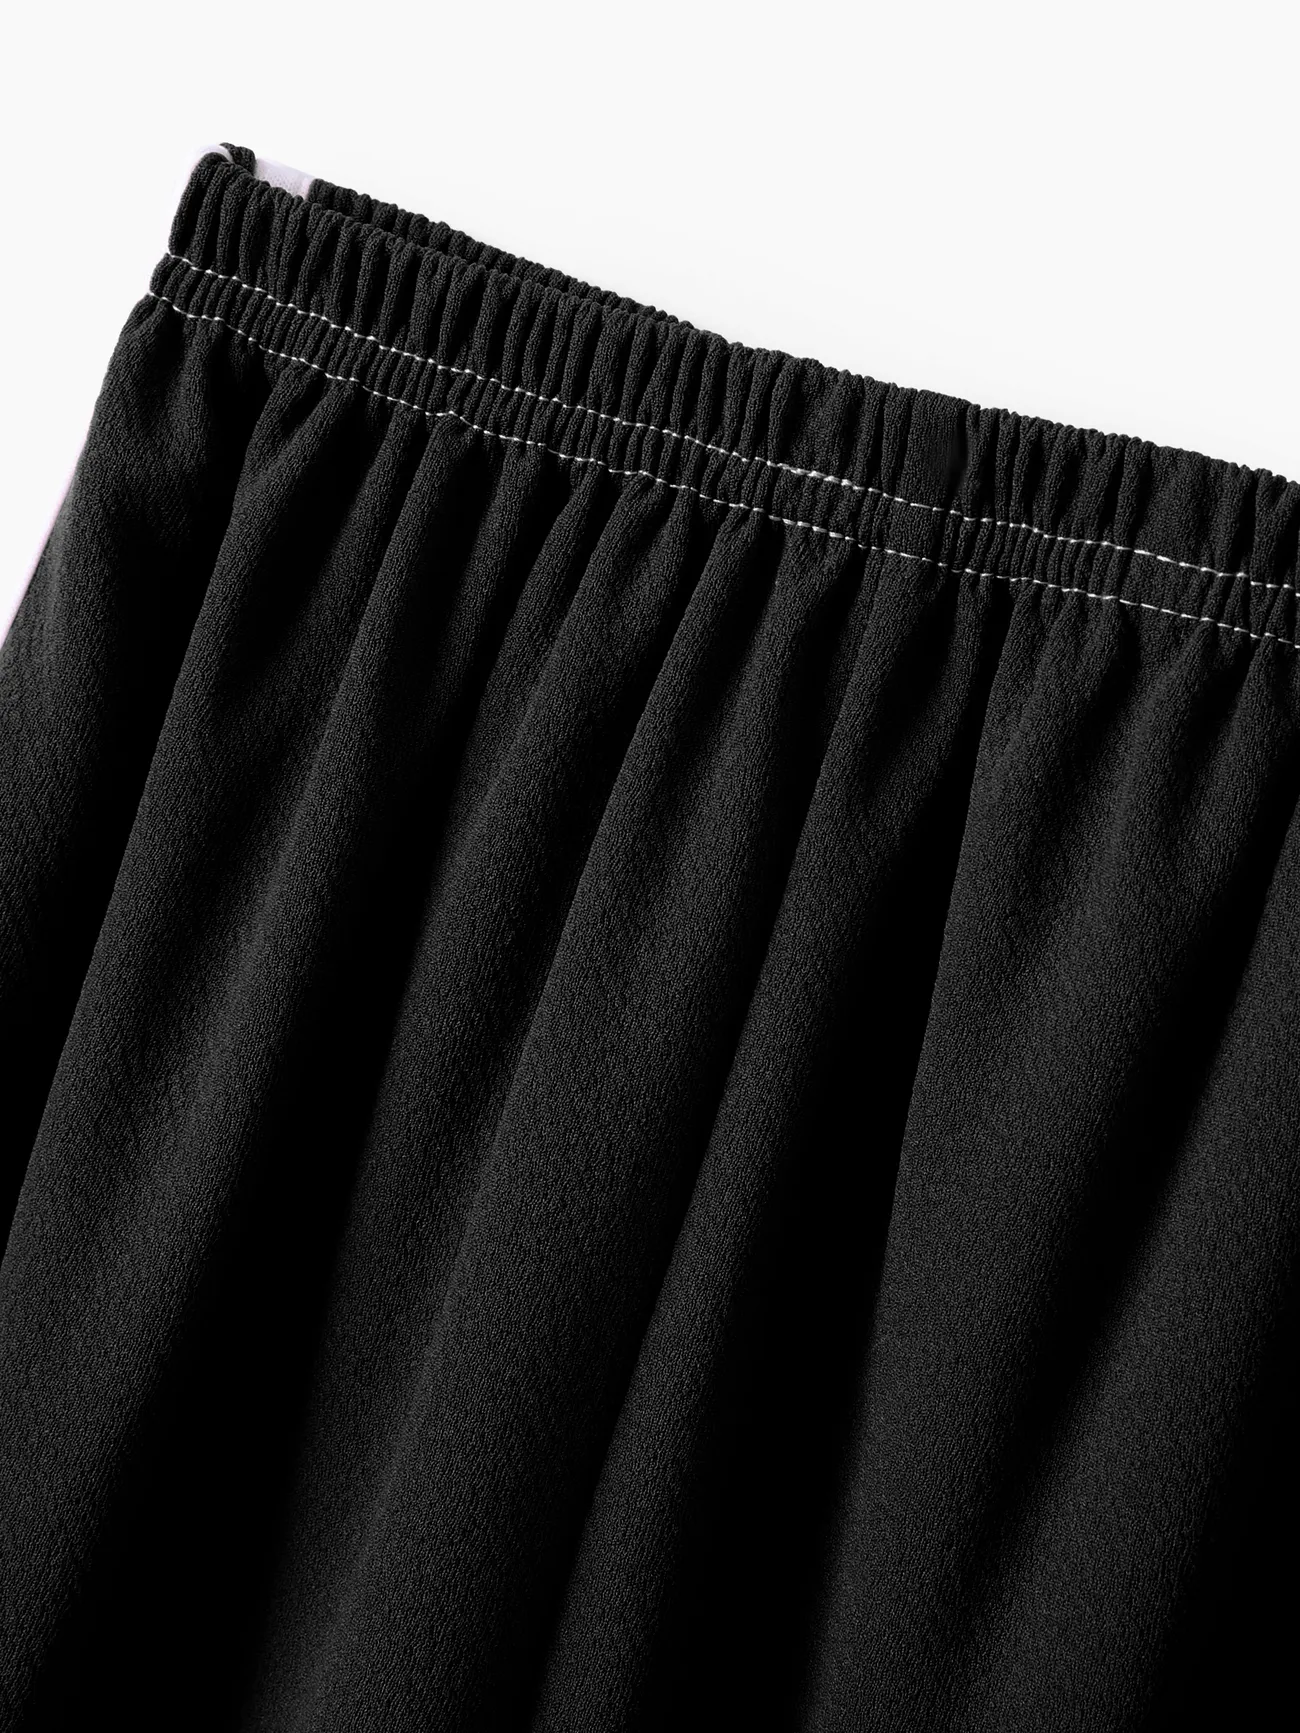 Pantalones finos hasta el tobillo transpirables a rayas deportivas para niño/niña para verano/otoño Negro big image 1